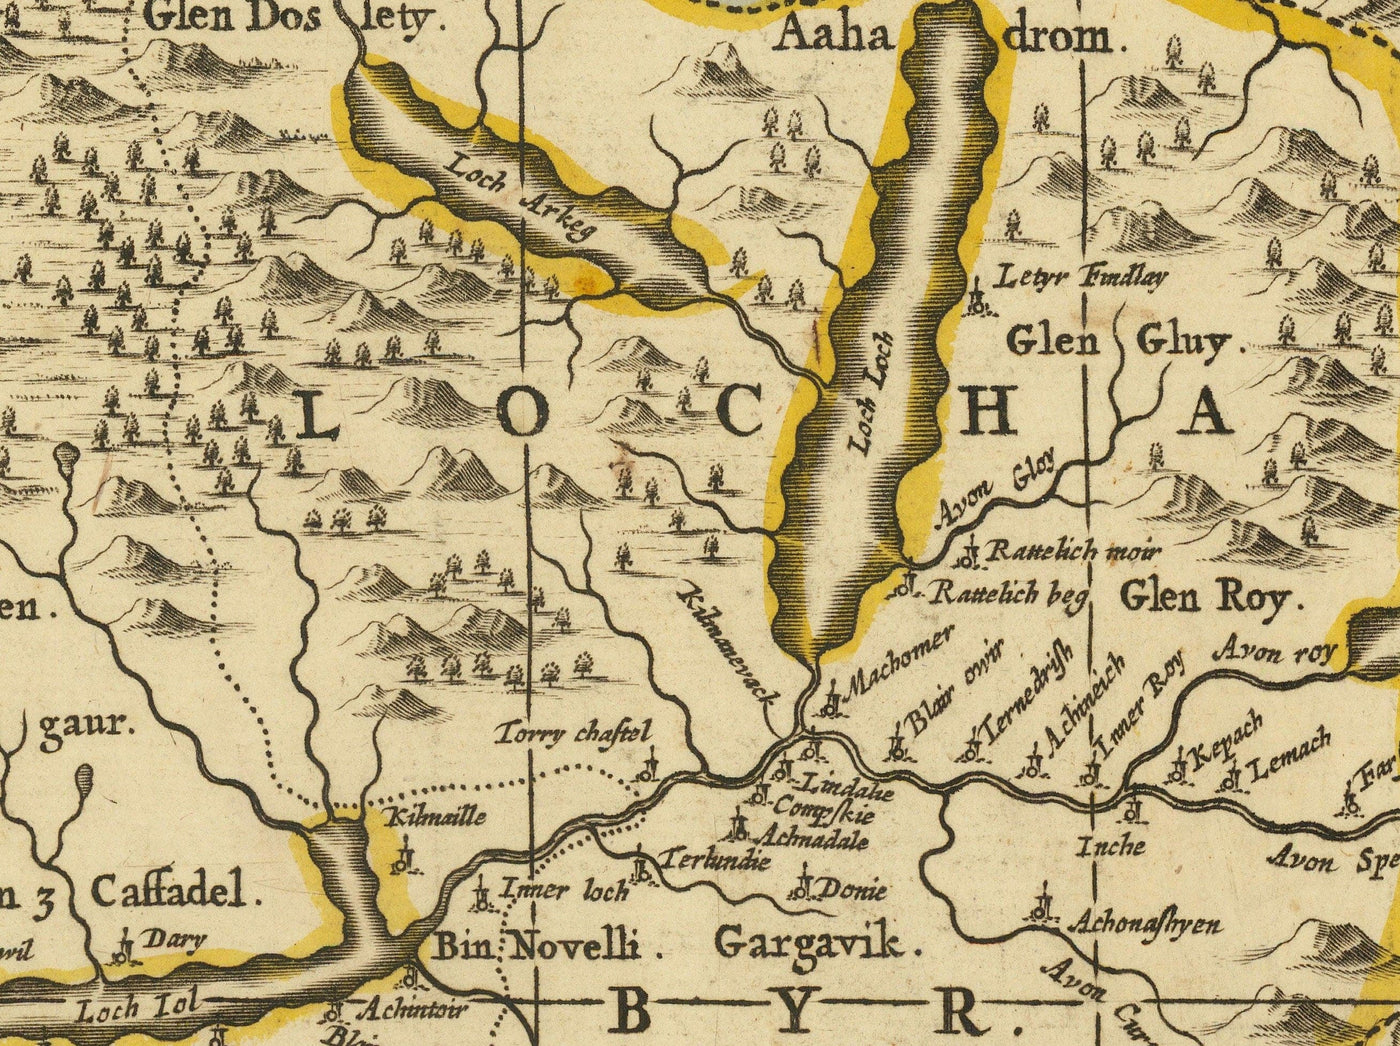 Ancienne carte des Hébrides intérieures et extérieures, Mull et Skye, 1690 - Lochaber, Uist, Harris, Barra, Îles, Lochs